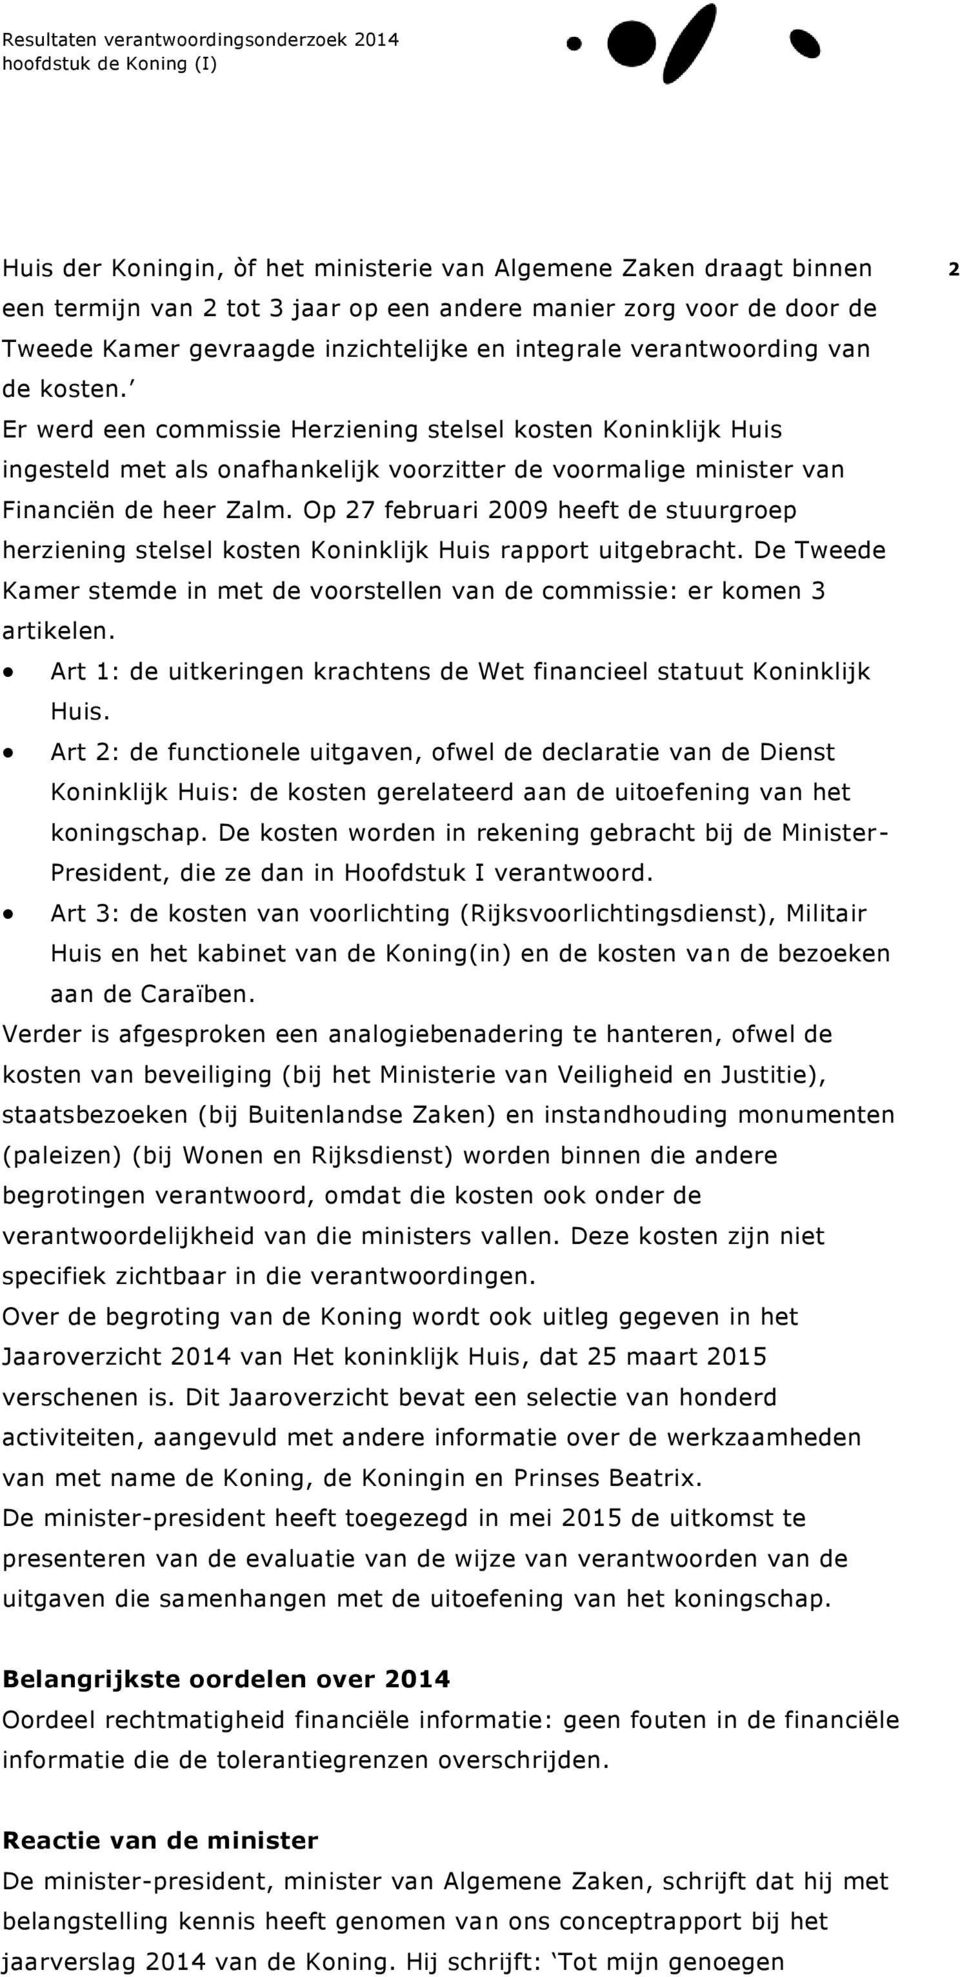 Op 27 februari 2009 heeft de stuurgroep herziening stelsel kosten Koninklijk Huis rapport uitgebracht. De Tweede Kamer stemde in met de voorstellen van de commissie: er komen 3 artikelen.